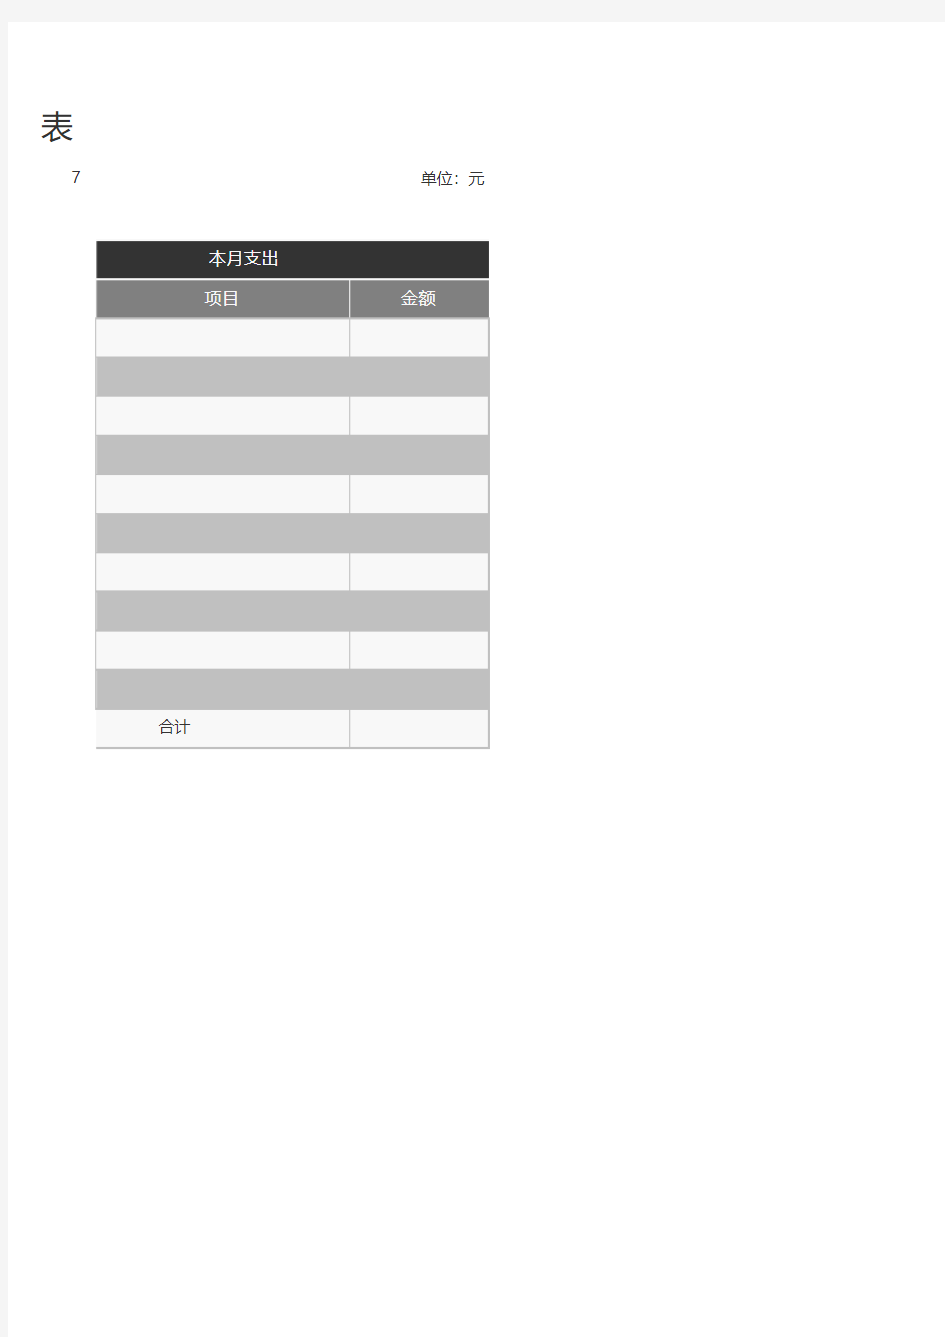 收支月报表-Excel图表模板